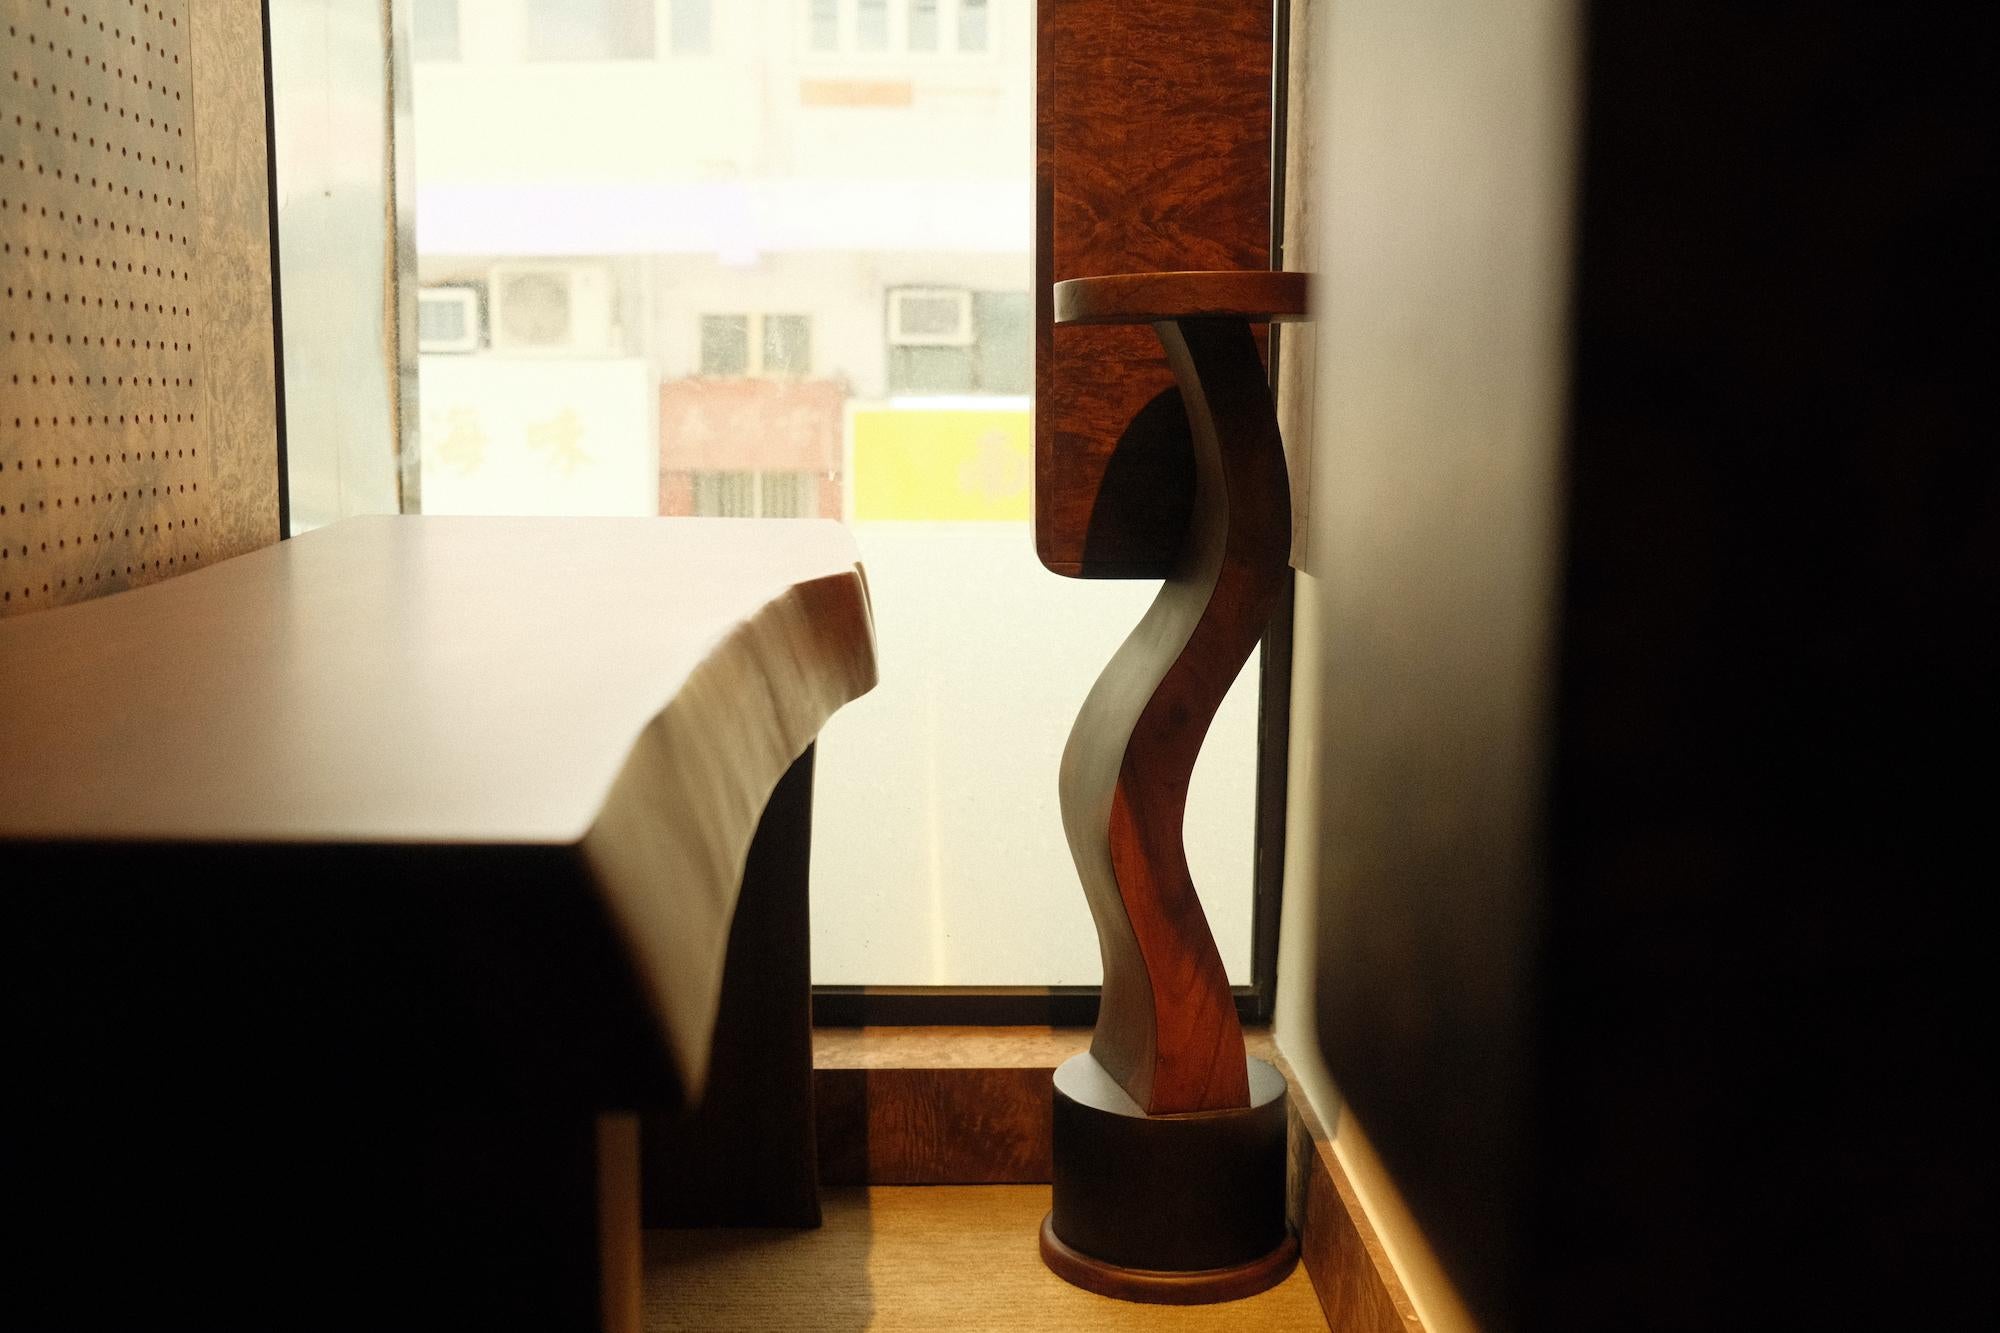 Unser S-Table-05 oder One Cup Coffee Stand ist ein platzsparendes Akzentobjekt, das genau die richtige Größe hat, um eine Tasse Kaffee am Morgen in Ihrem Wohnraum oder eine Tasse Tee am Abend in Ihrem Schlafzimmer zu servieren.

Ein atemberaubender